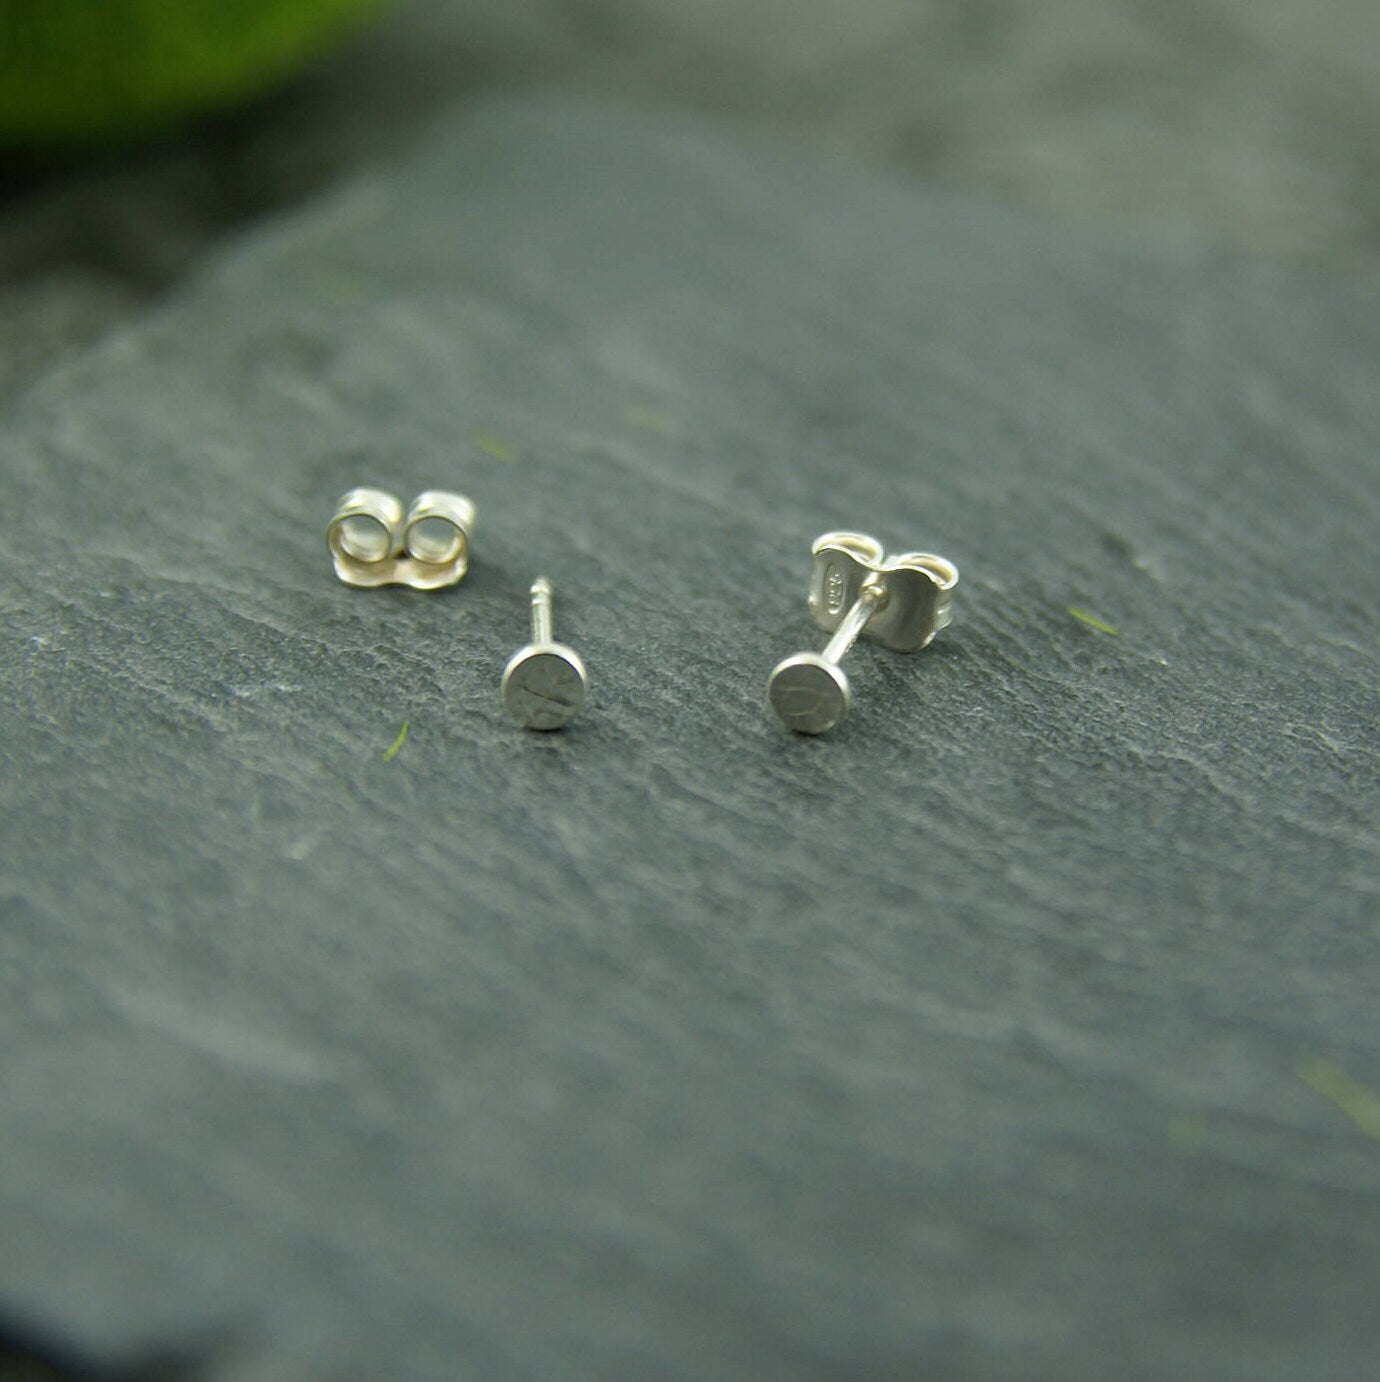 Mini leaf earrings in sterling silver